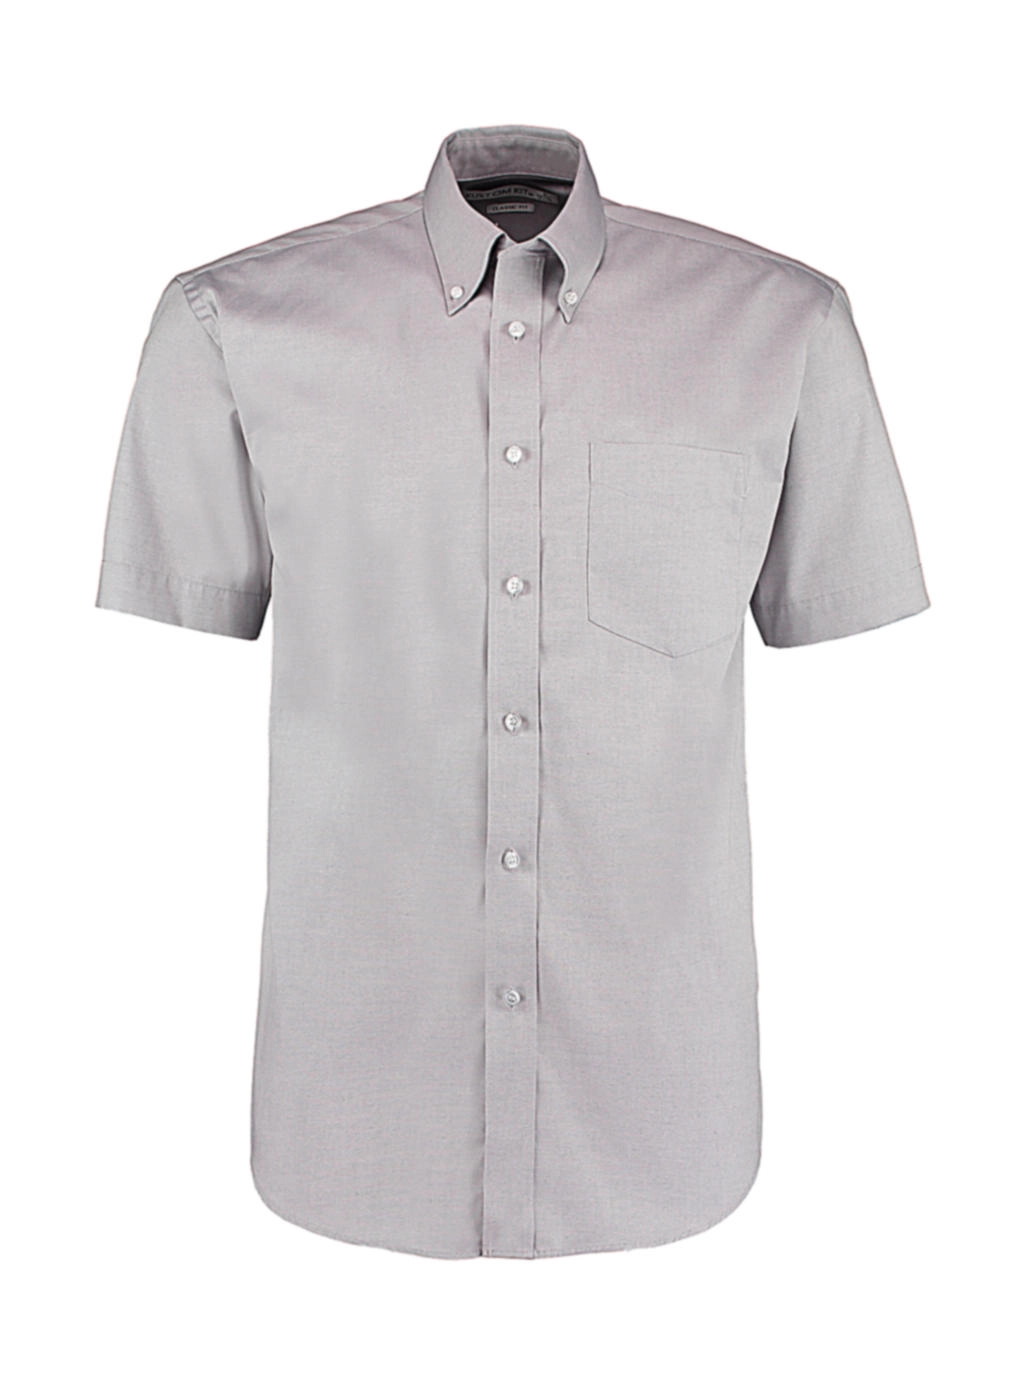 Classic Fit Premium Oxford Shirt SSL zum Besticken und Bedrucken in der Farbe Silver Grey mit Ihren Logo, Schriftzug oder Motiv.